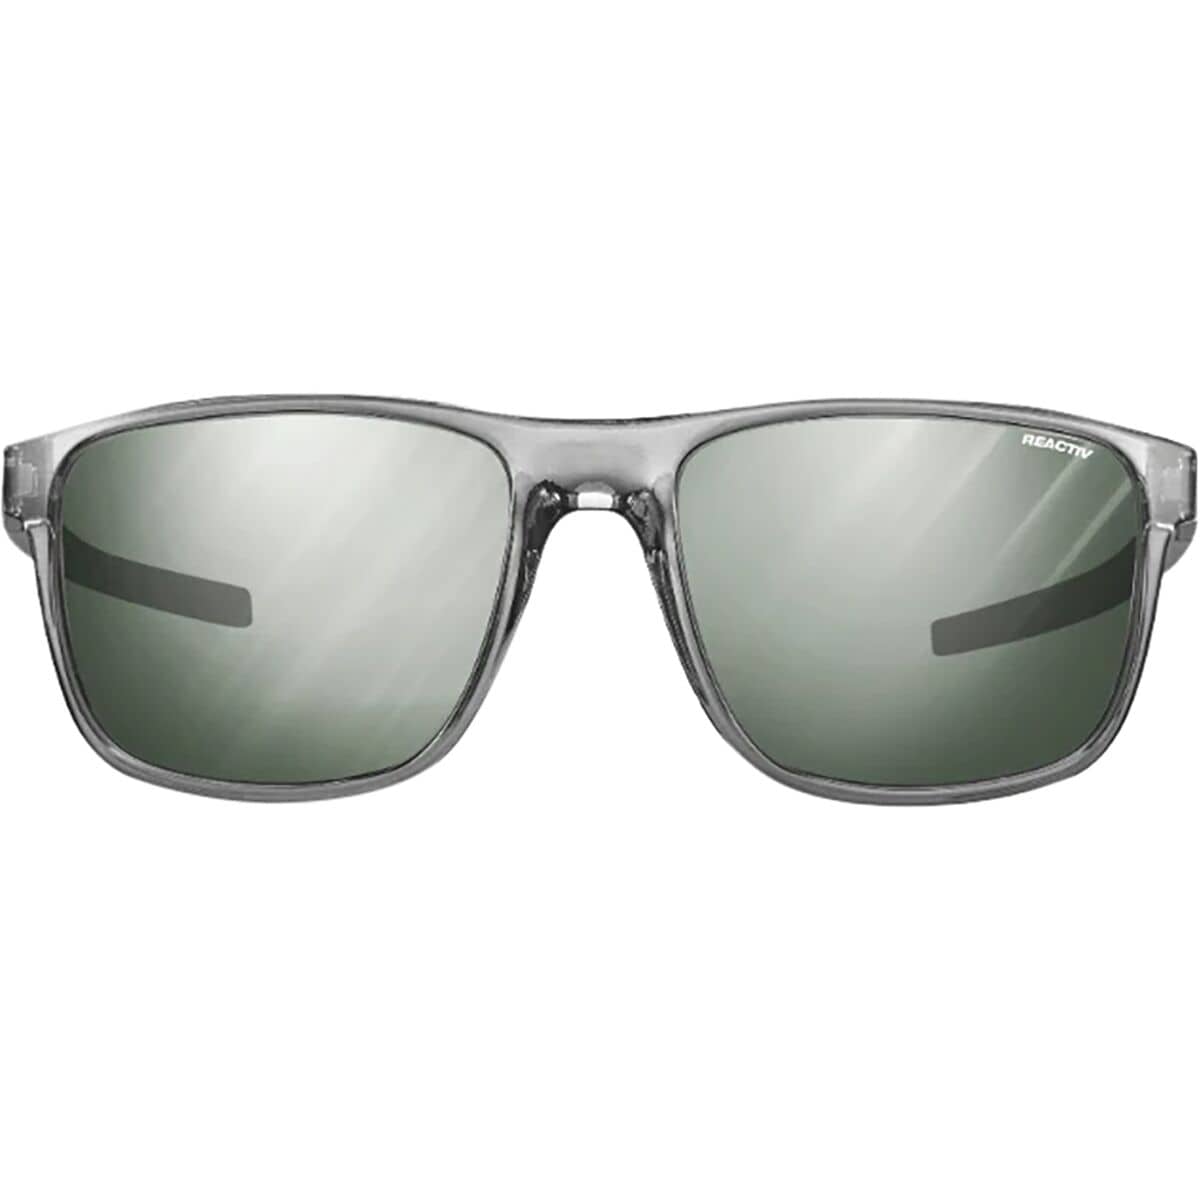 Julbo The Streets Sunglasses | Size 57 Black - Gray - ReActiv 1 & 3 Glare Control - Heavyglare